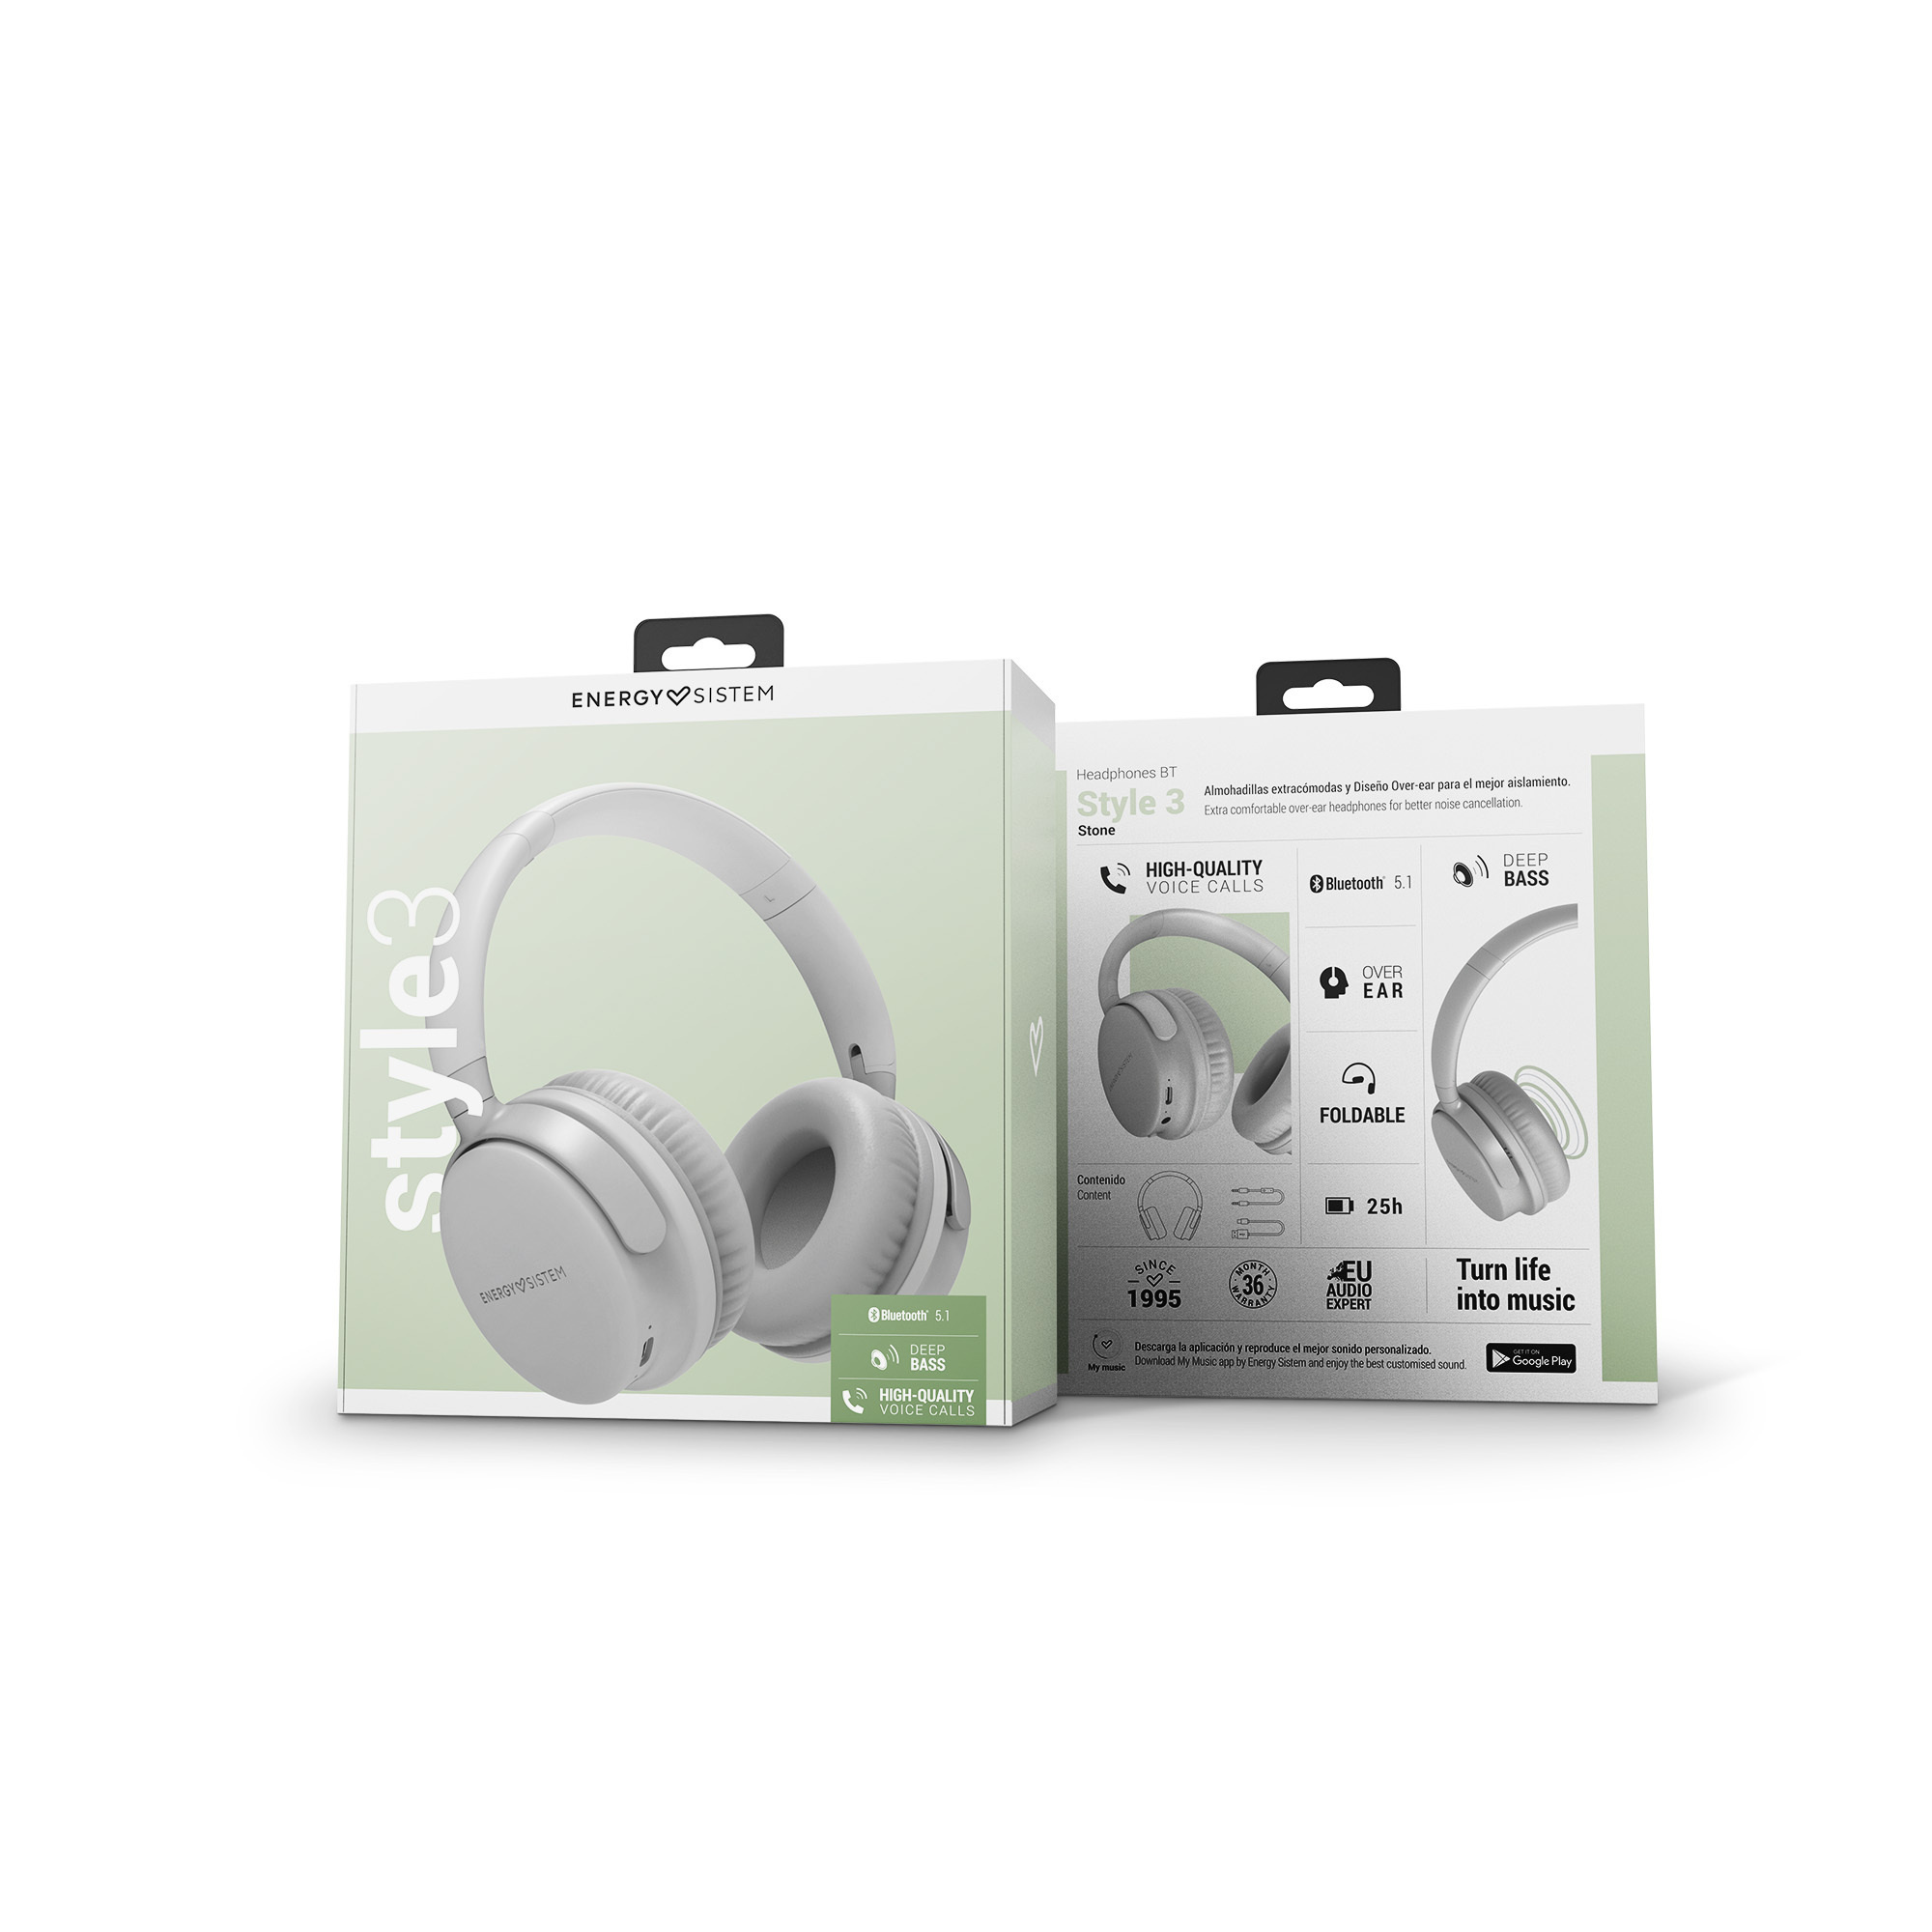 Style 3 Bluetooth headphones' packaging